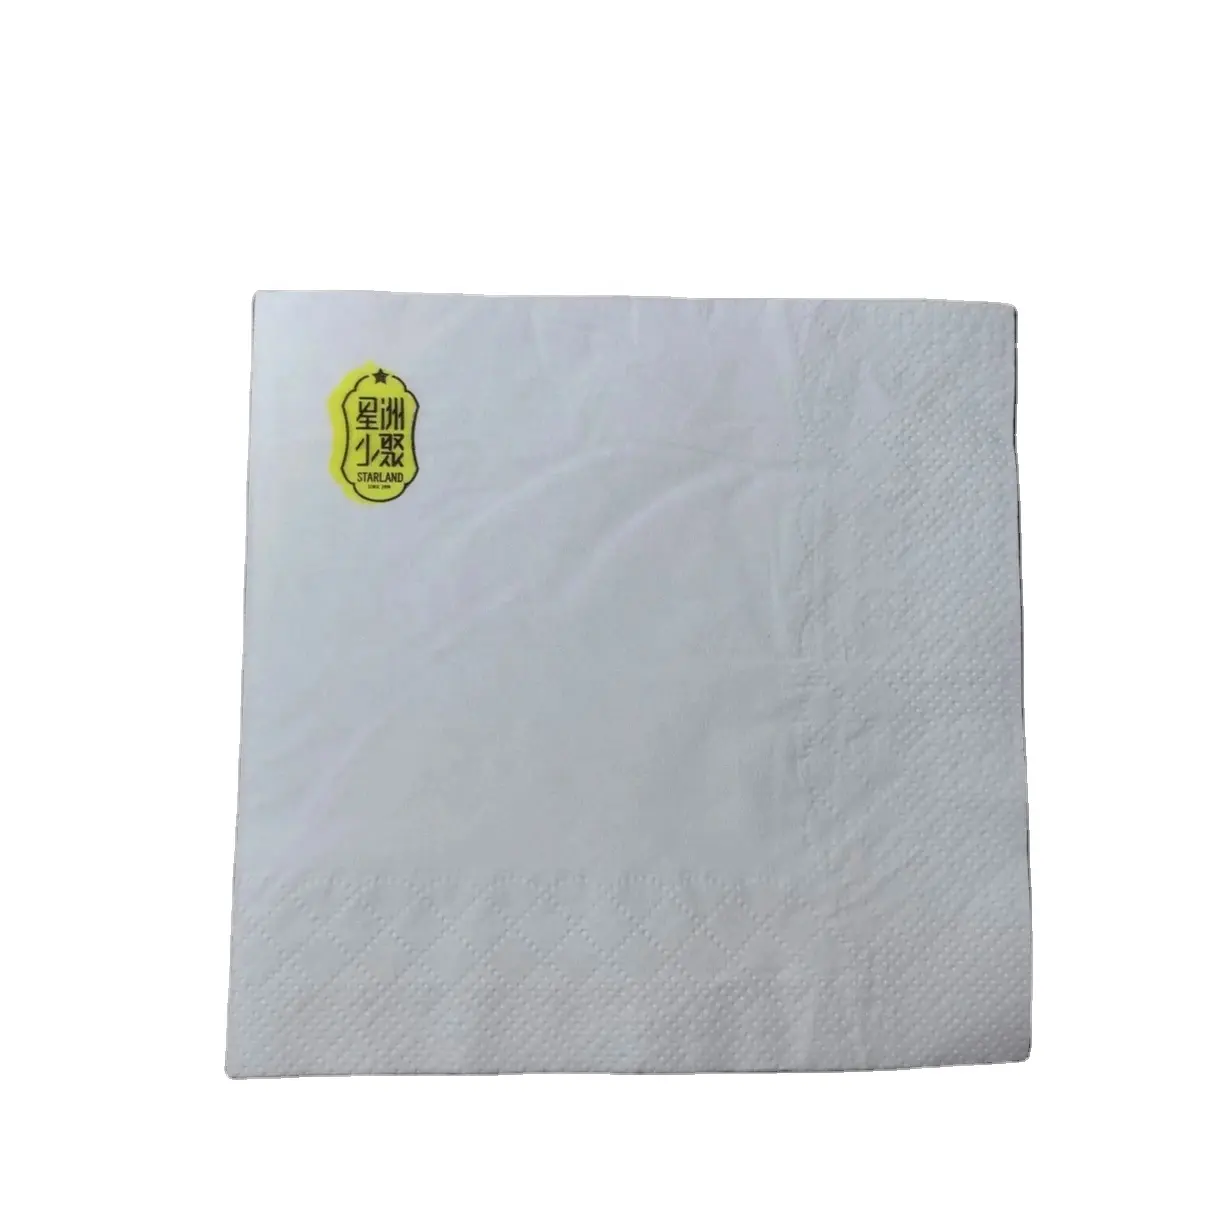 1/4 bianco piegato usa e getta tovaglioli di carta per la cena fazzoletti per il ristorante dell'hotel